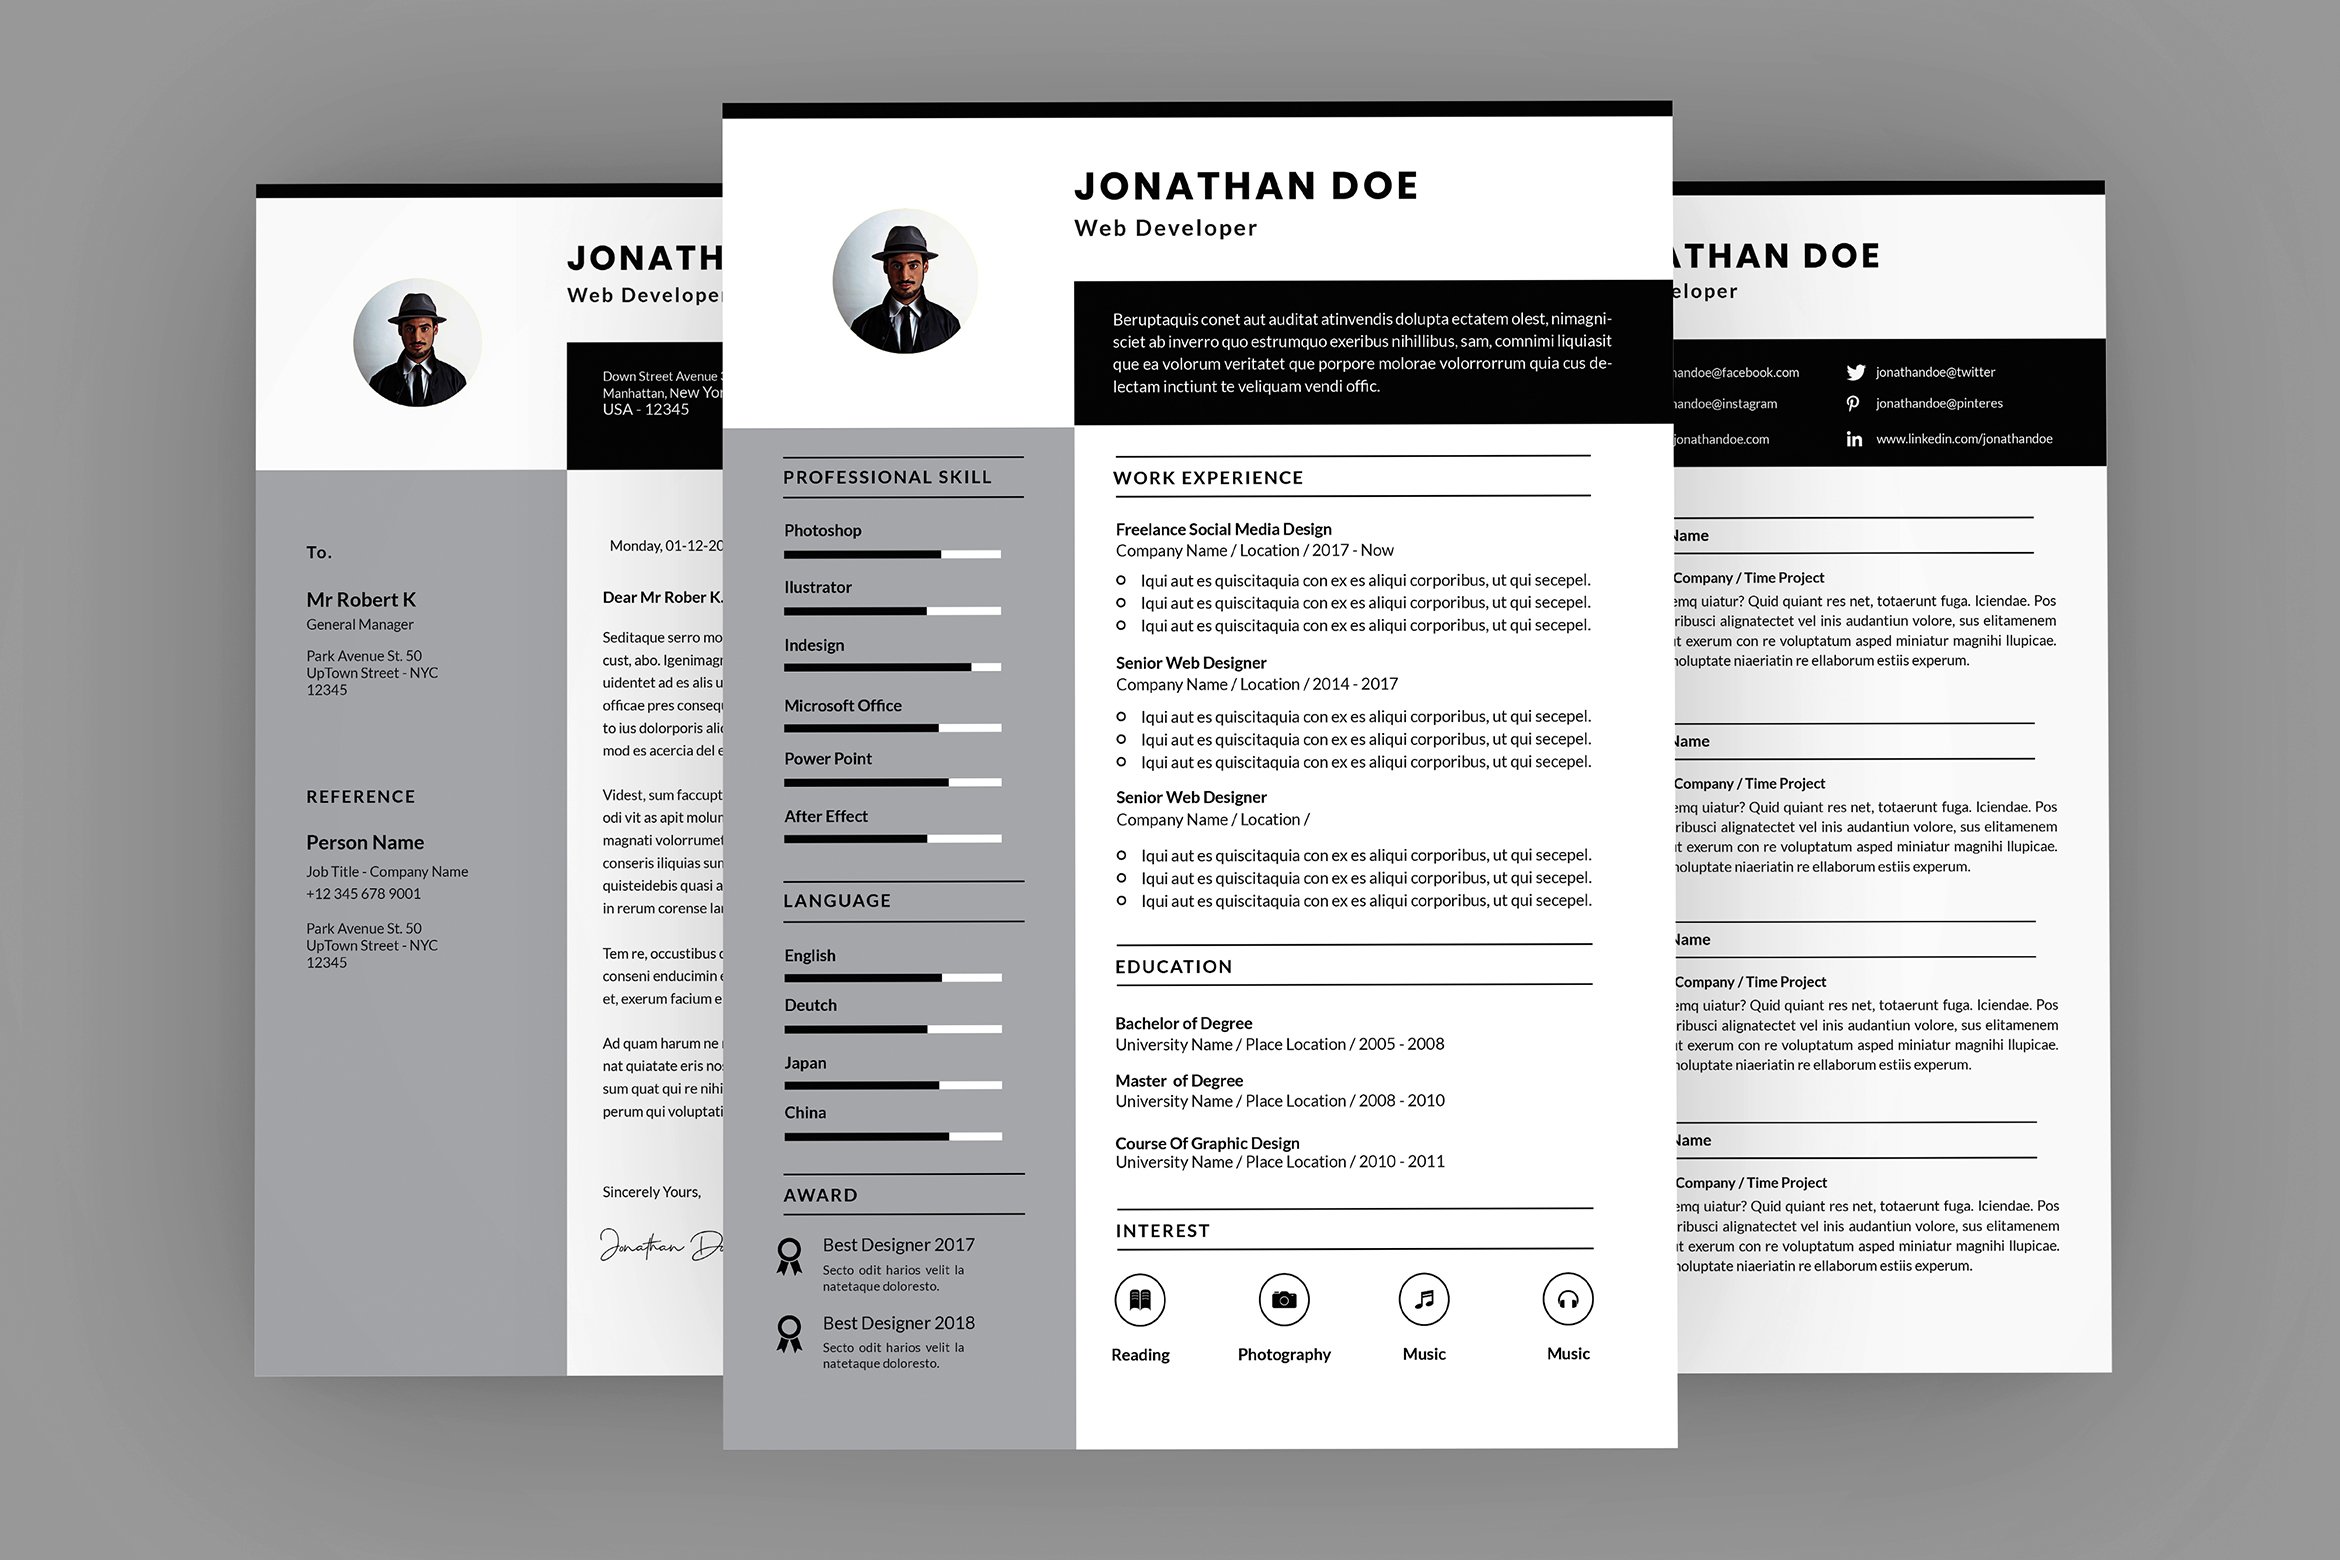 Jonathan Developer Resume Designer cover image.